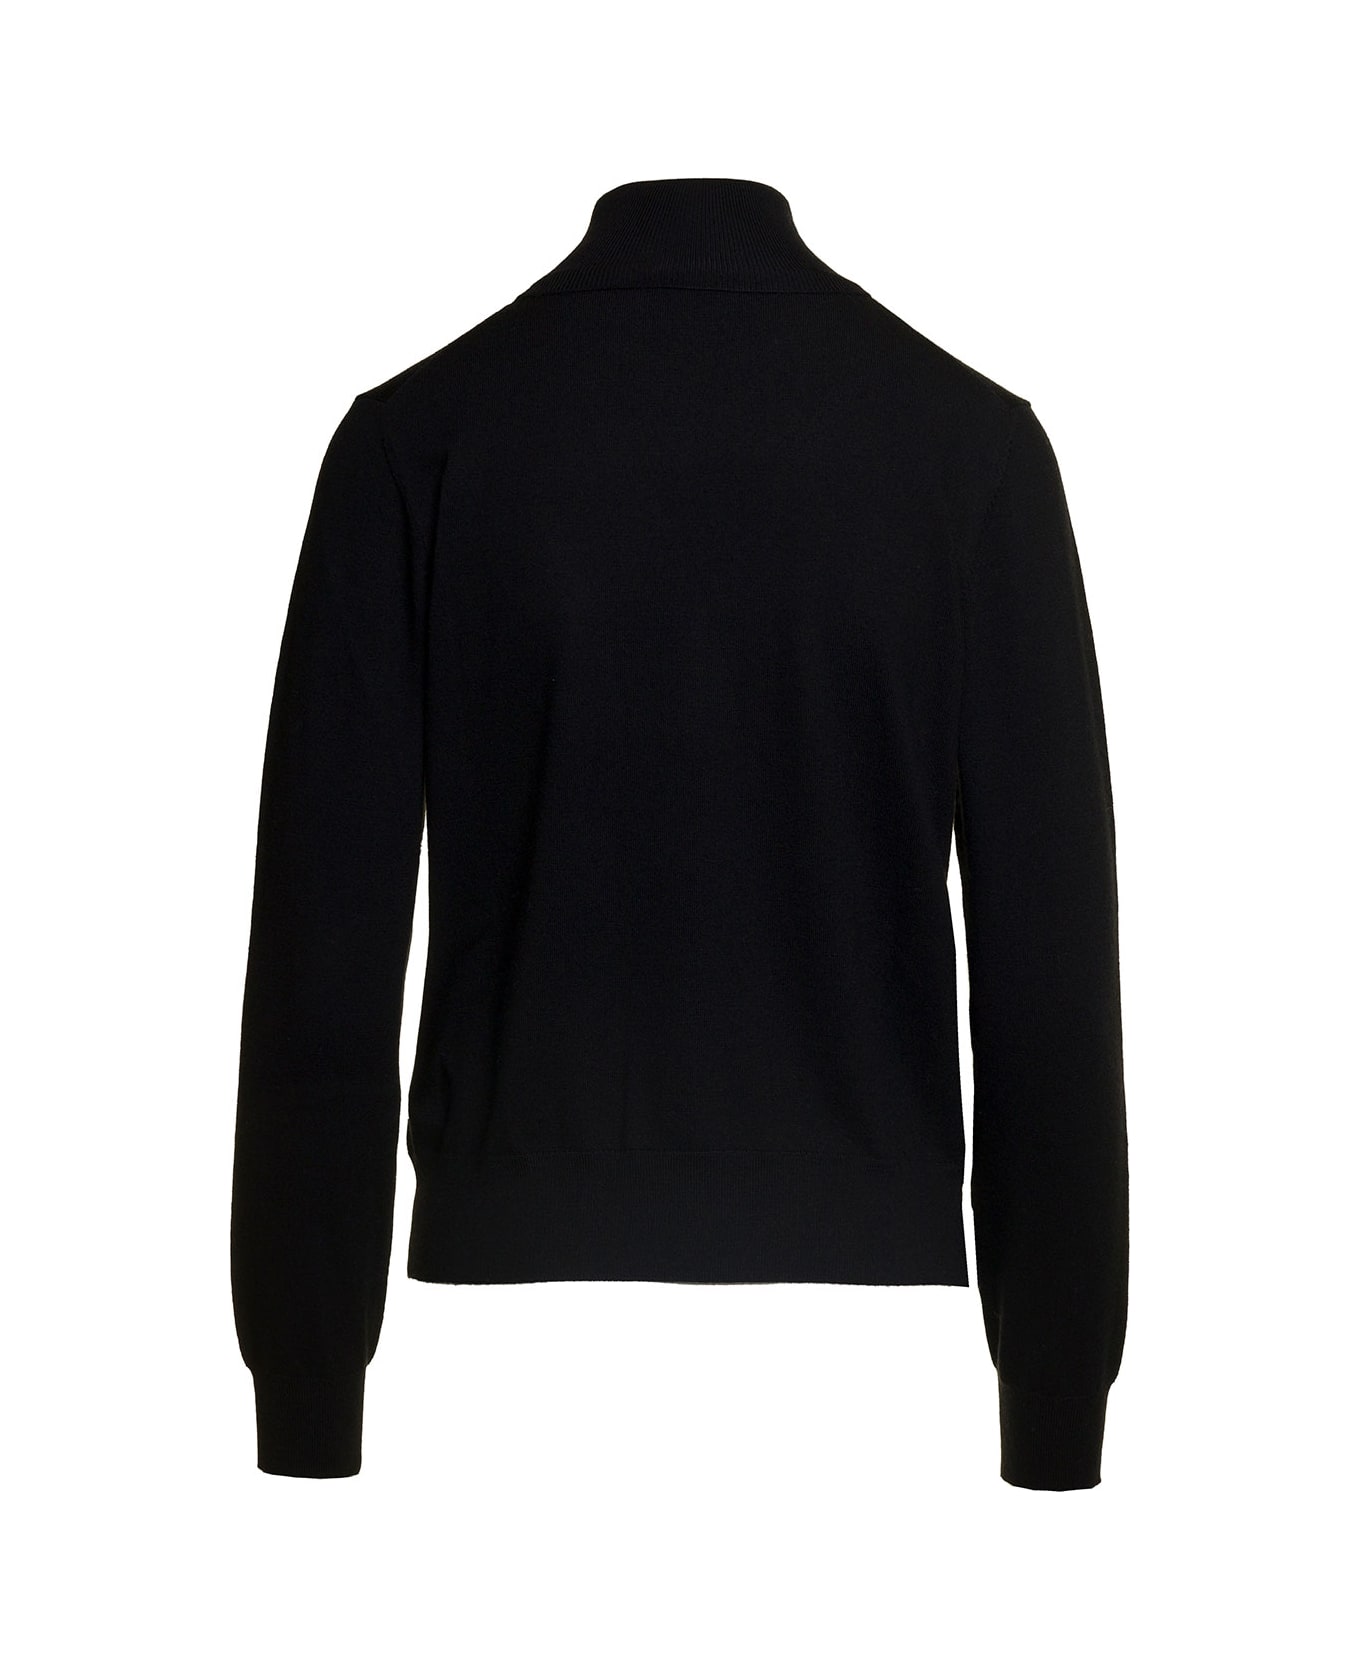 Parosh Black Mock Neck Sweatshirt With Long Sleeves In Wool Blend Woman - Nero